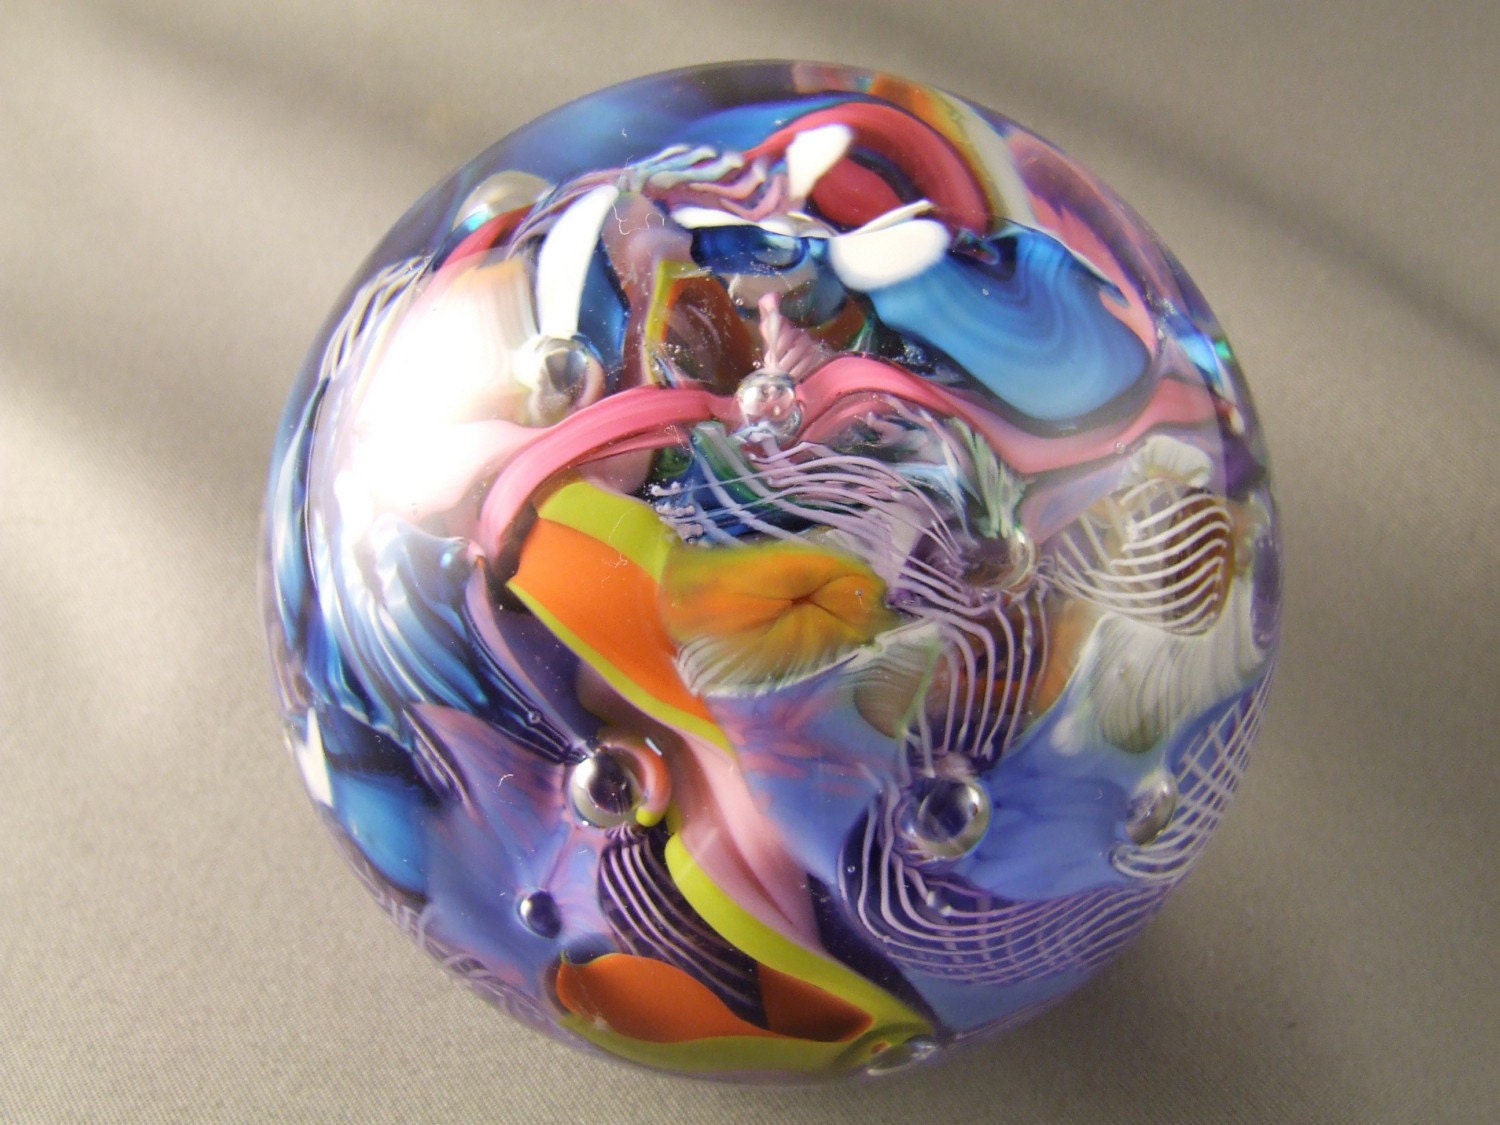 Handblown glass paperweight - Latticino cane - murrini - Mentuck art glass